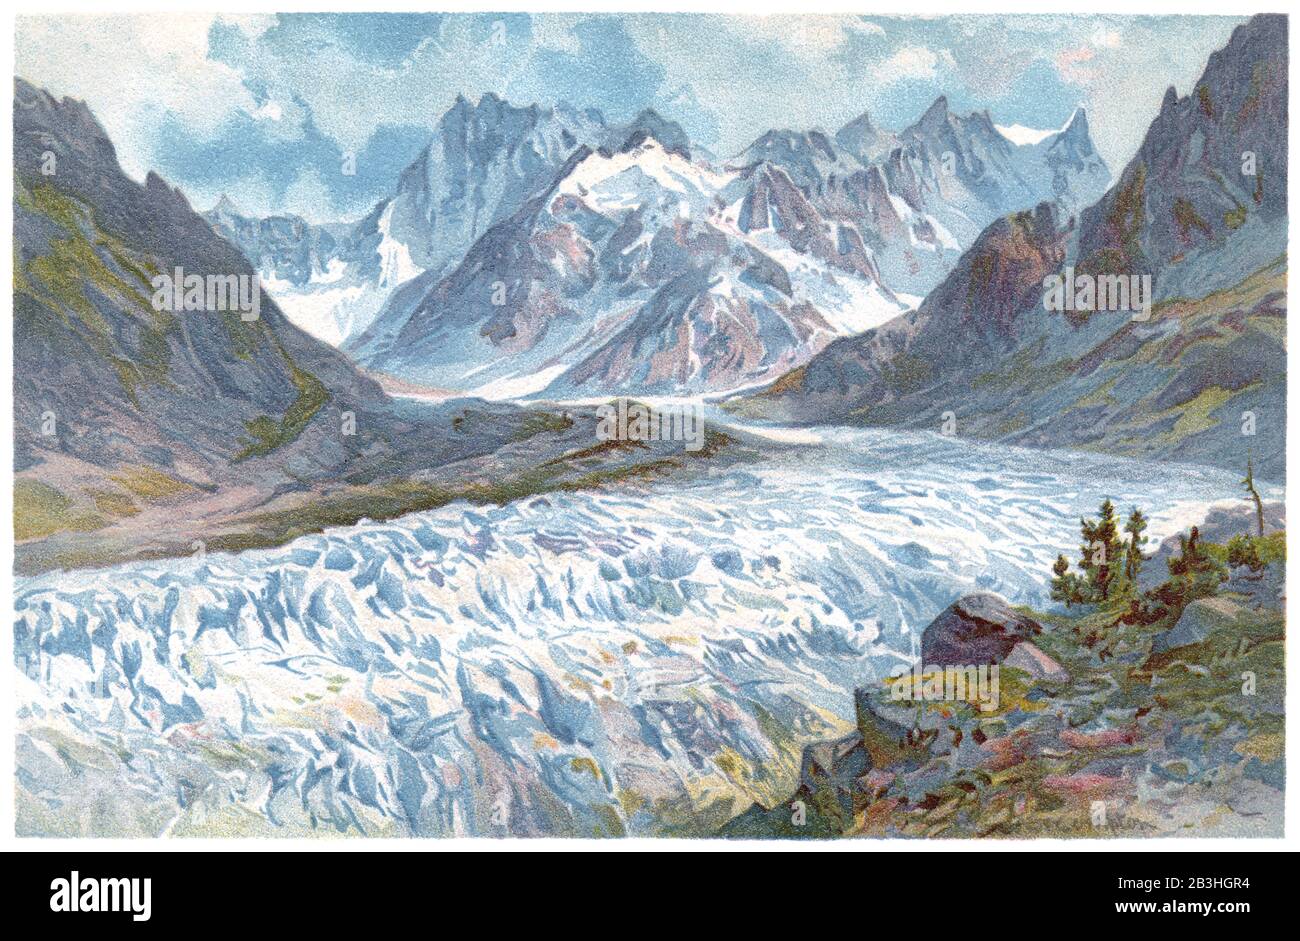 1893 illustration chromographique du glacier de Mer de glace (mer de glace) dans les Alpes françaises. La montagne des grandes Jorasses est en arrière-plan. Banque D'Images